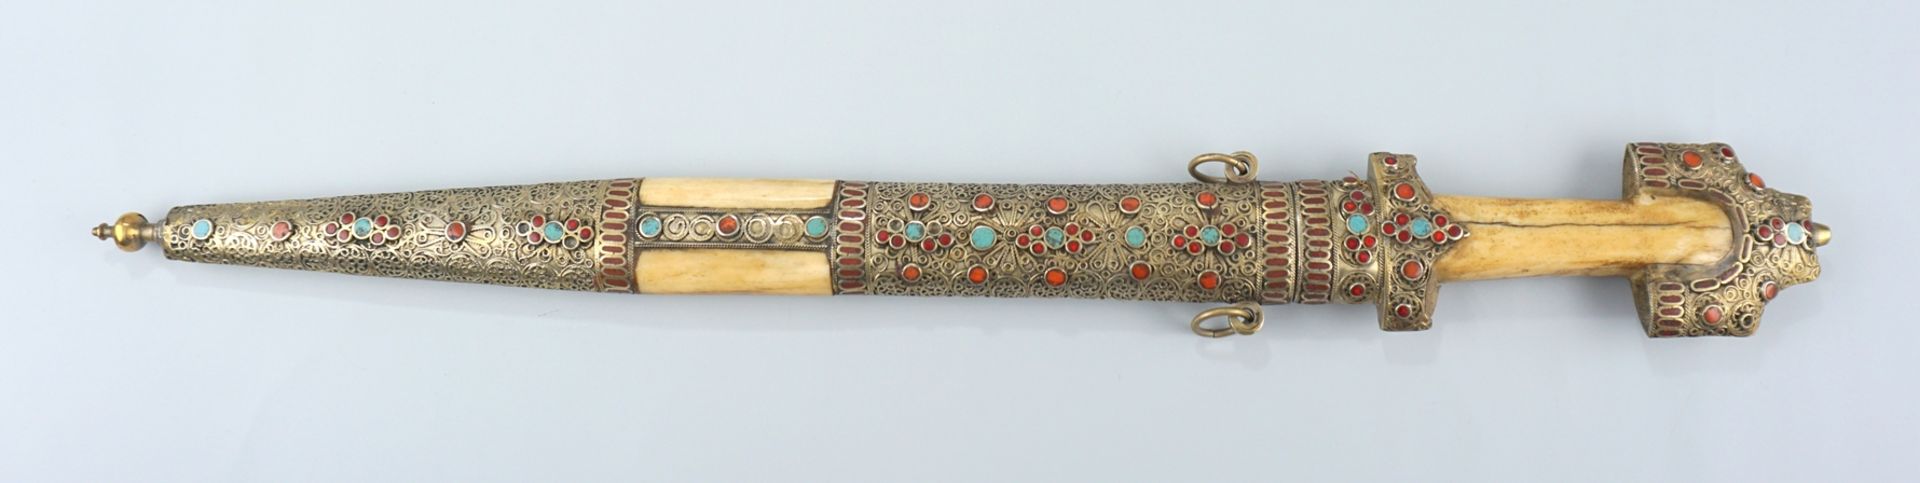 prunkvolles Schwert, Persien, Mitte 20. Jh. - Bild 2 aus 2